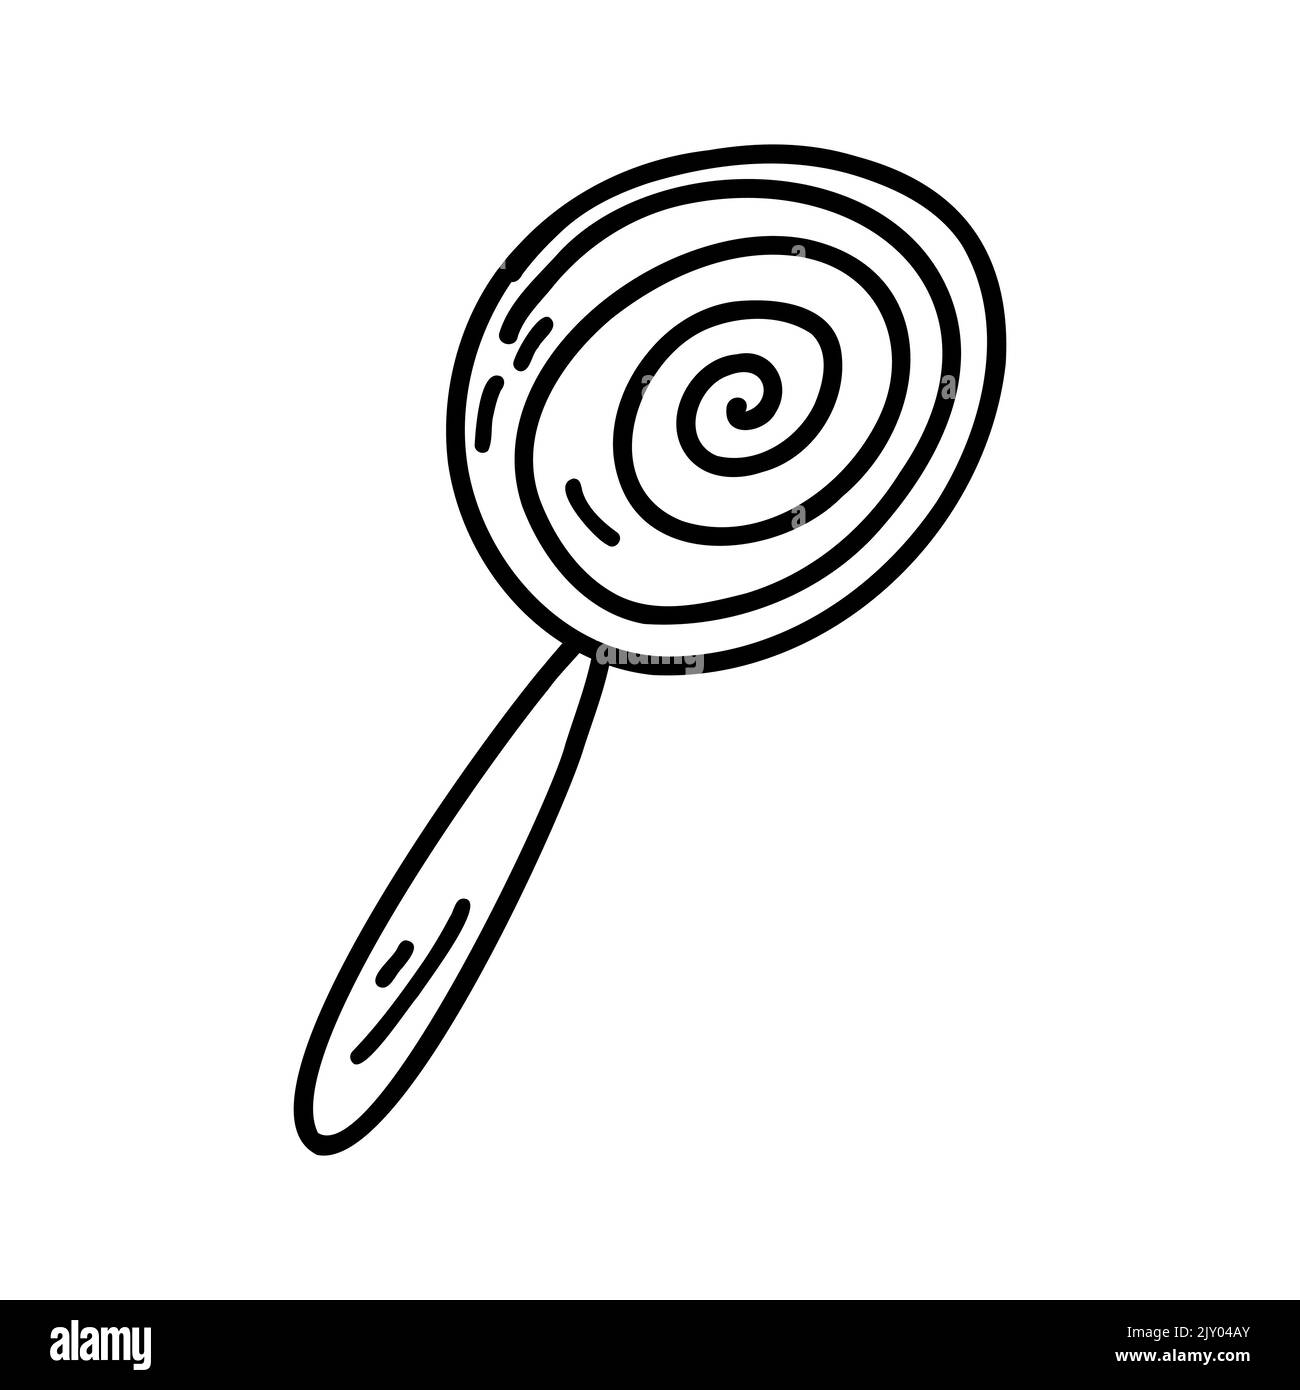 Handgezeichneter Doodle Lollipop. Vektor-Skizze Illustration, Linienkunst für Web-Design, Symbol, Druck, Malseite Stock Vektor